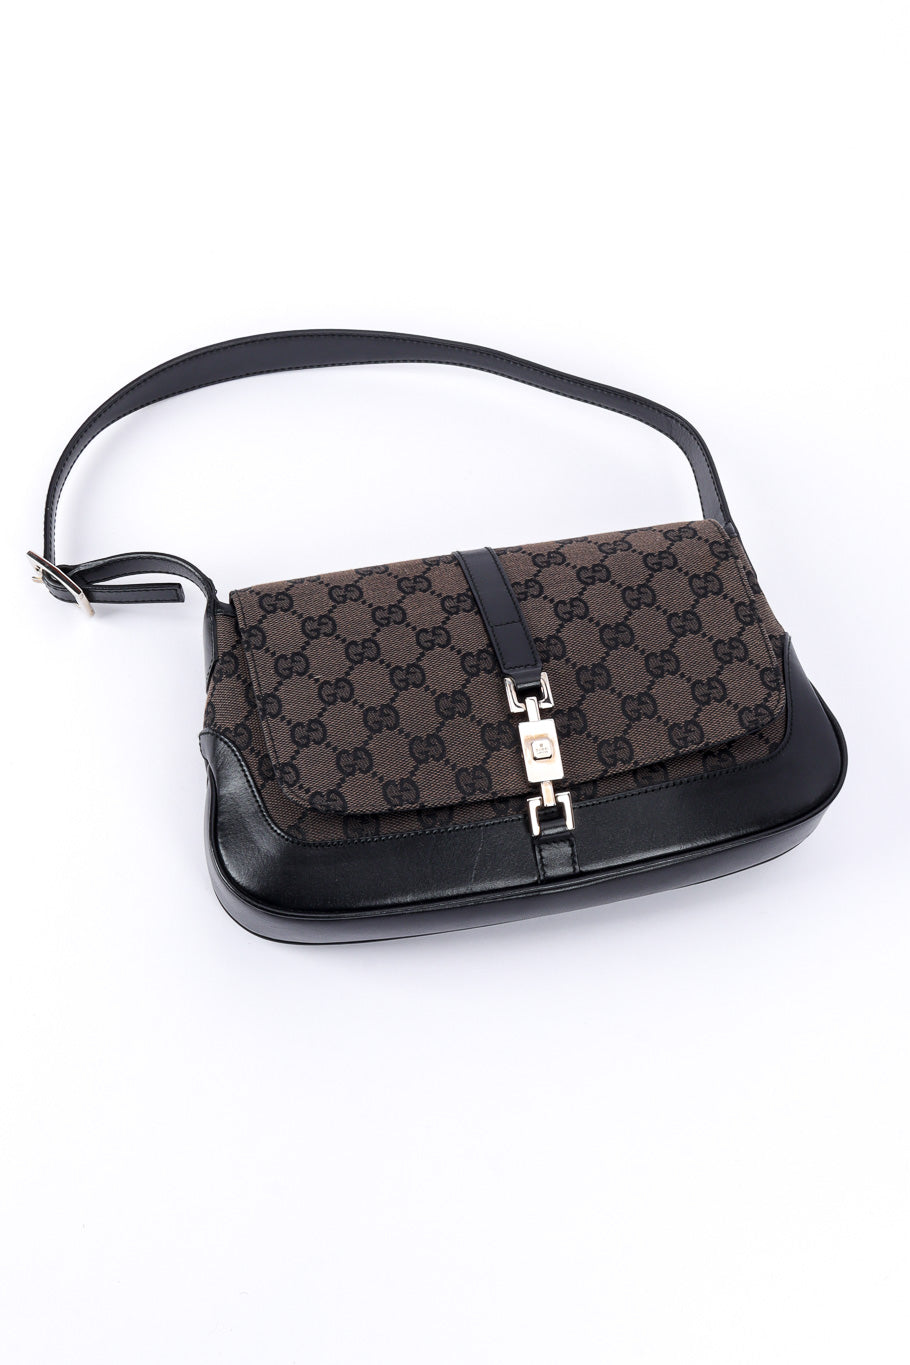 Gucci Vintage Leather Flap Shoulder Bag Black